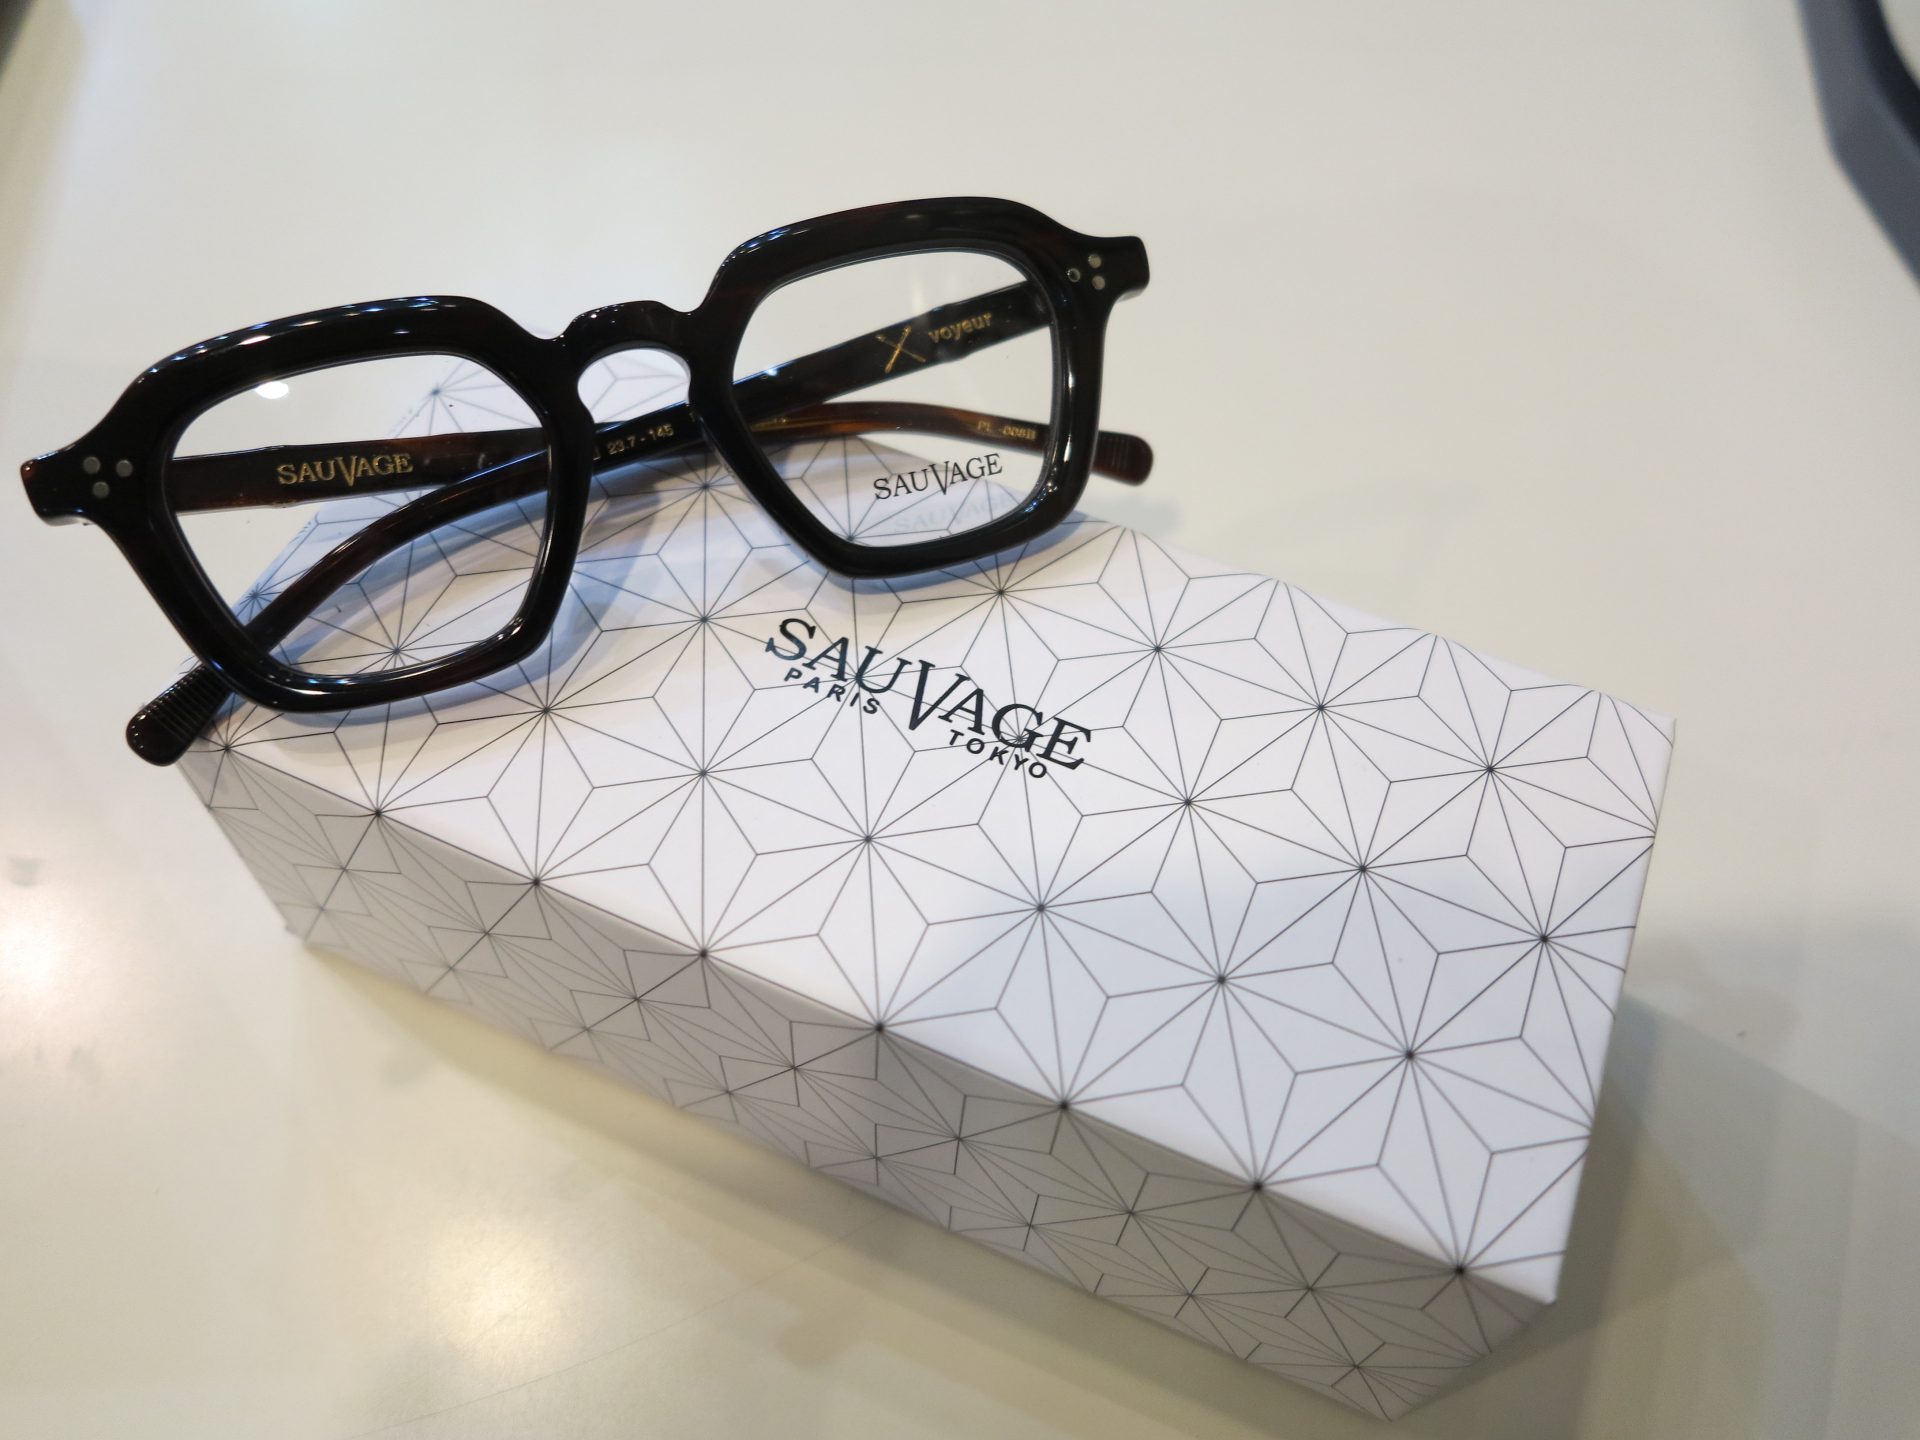 SAUVAGE 新作です | private - 名古屋栄の海外ブランドメガネ